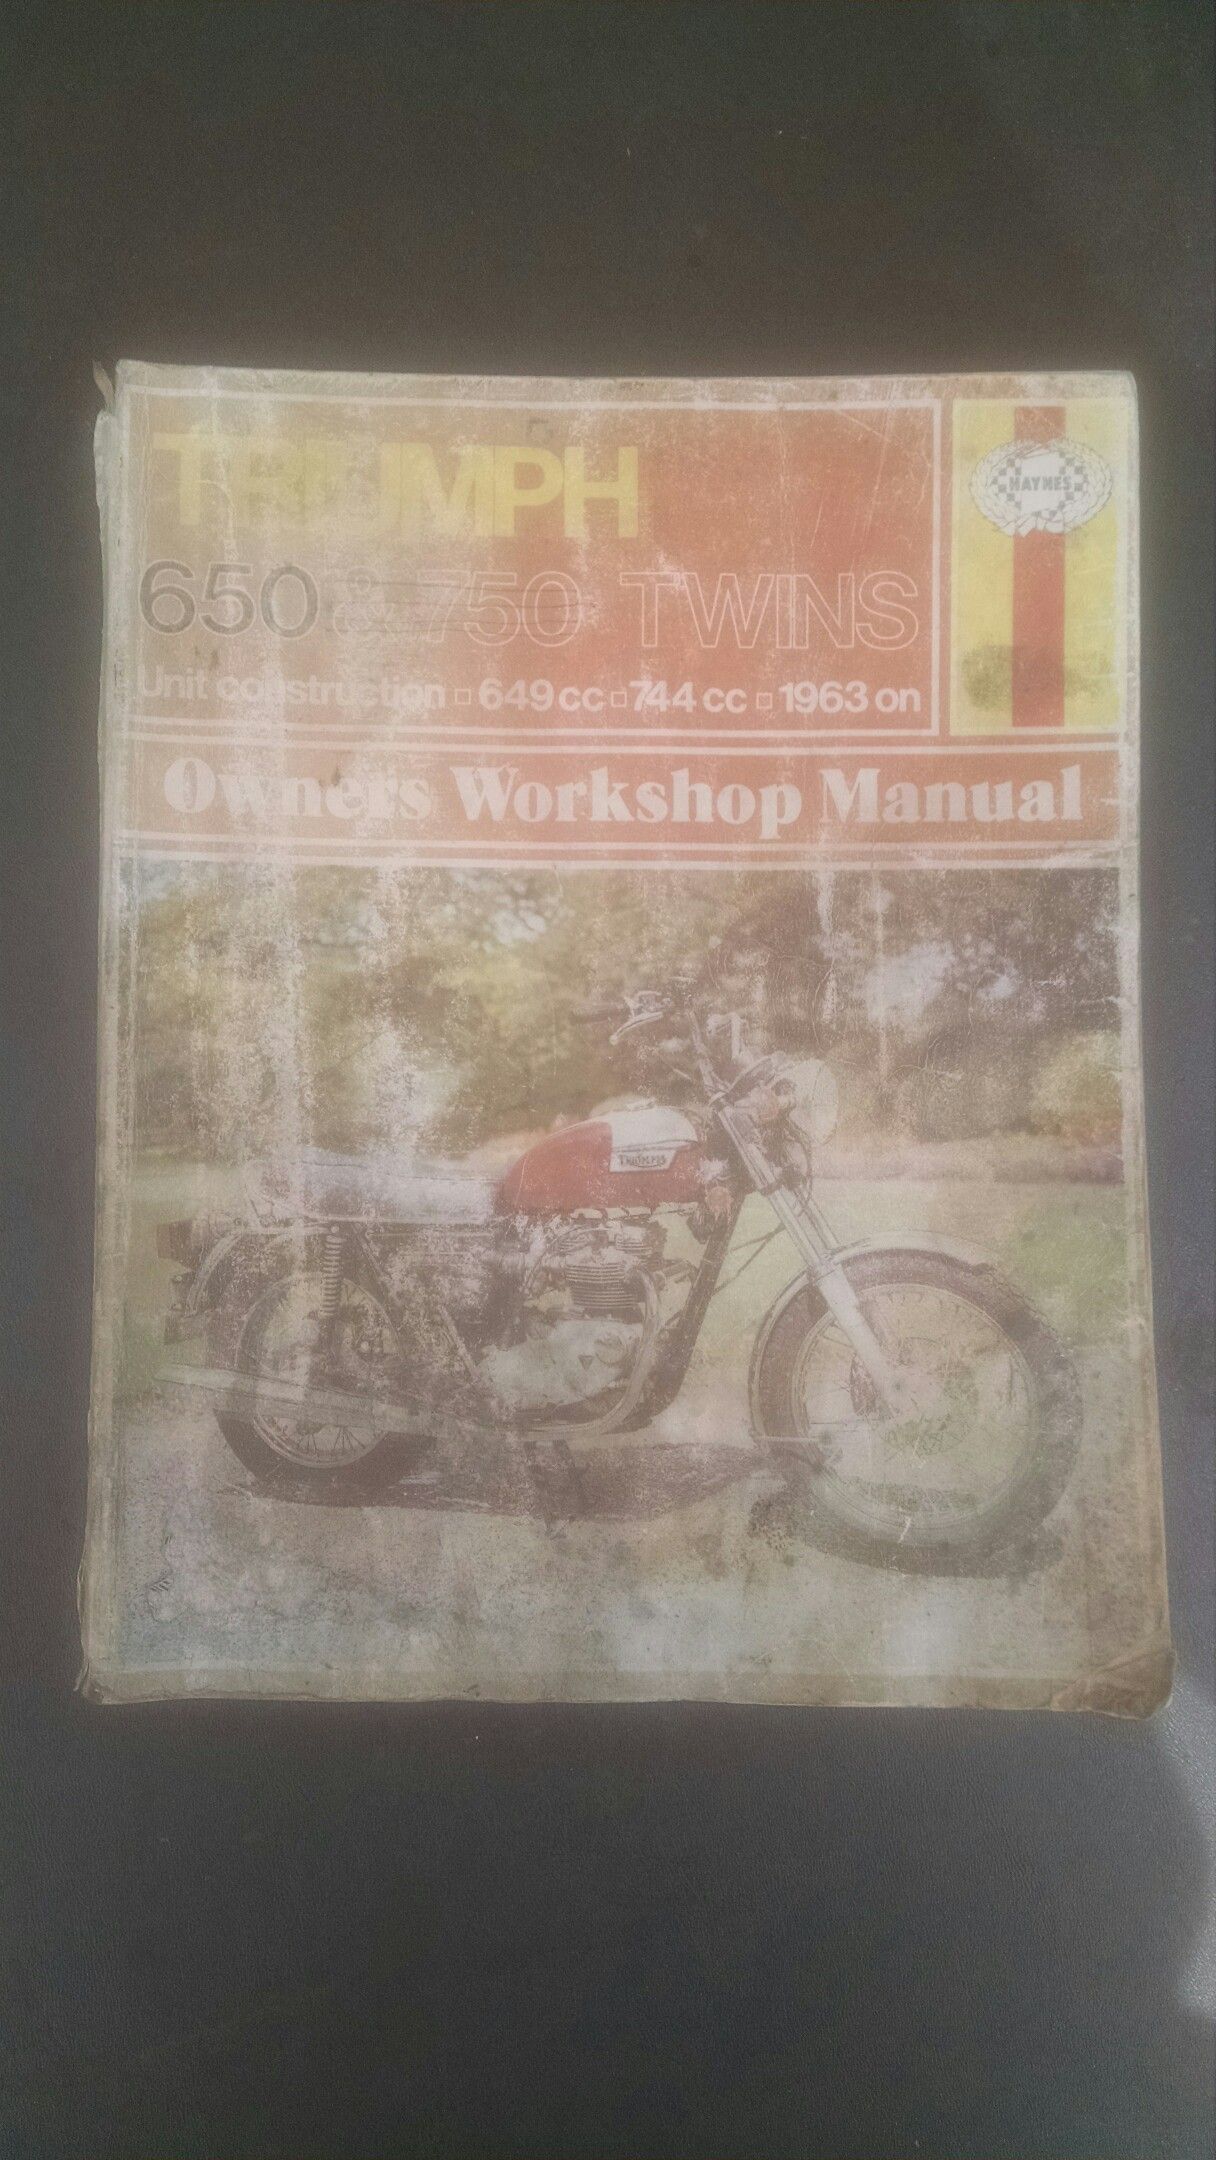 Repair manual for older Triumph 650 motorcycles